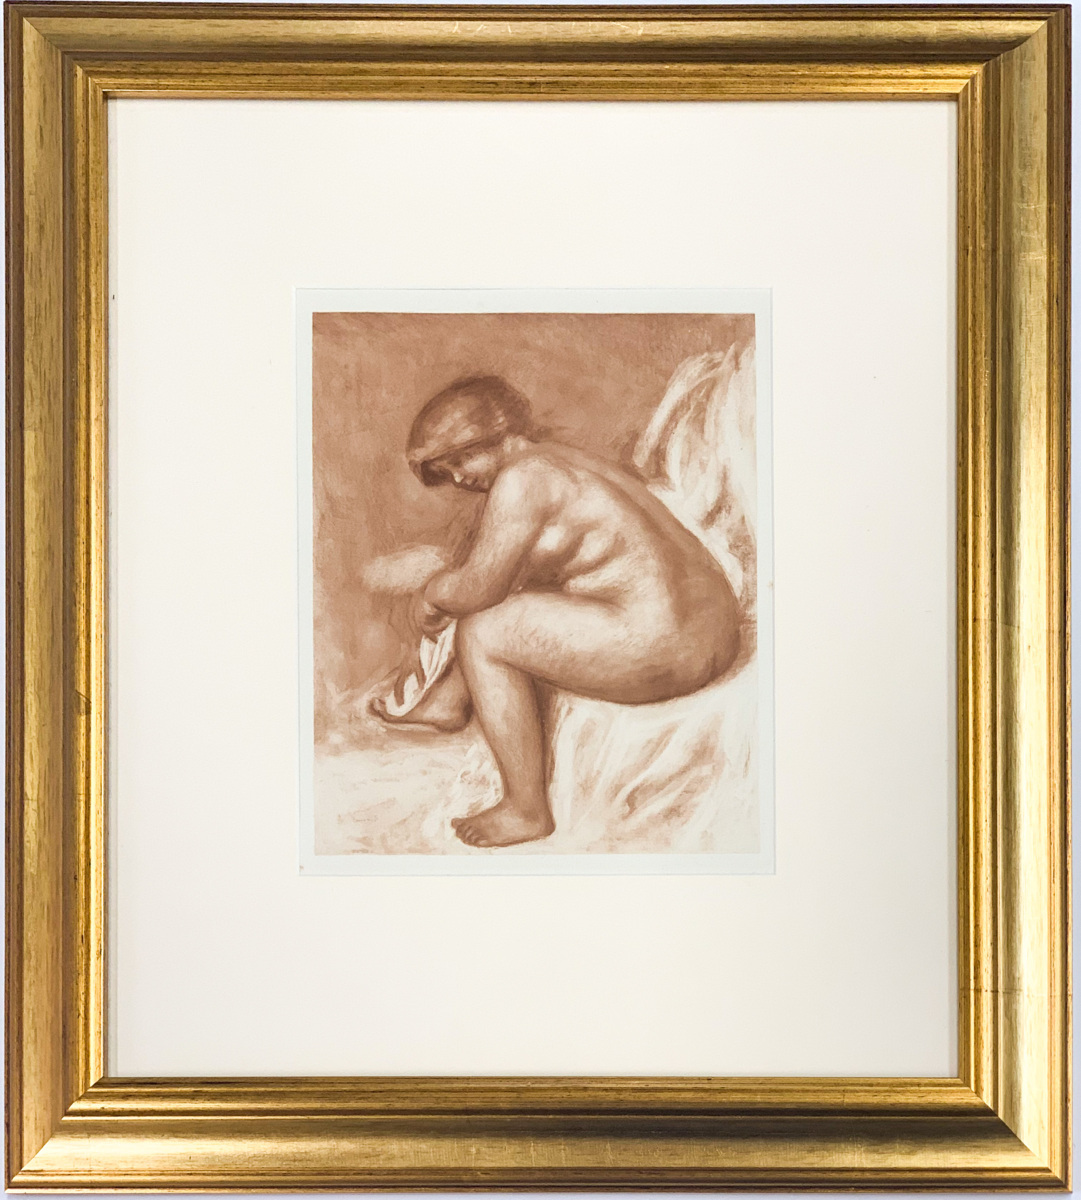 【SHIN】ルノワール「身体を拭く裸婦」銅版画（アルベール・アンドレ『ルノワール デッサン』より）1952年 額装 Pierre-Auguste Renoir